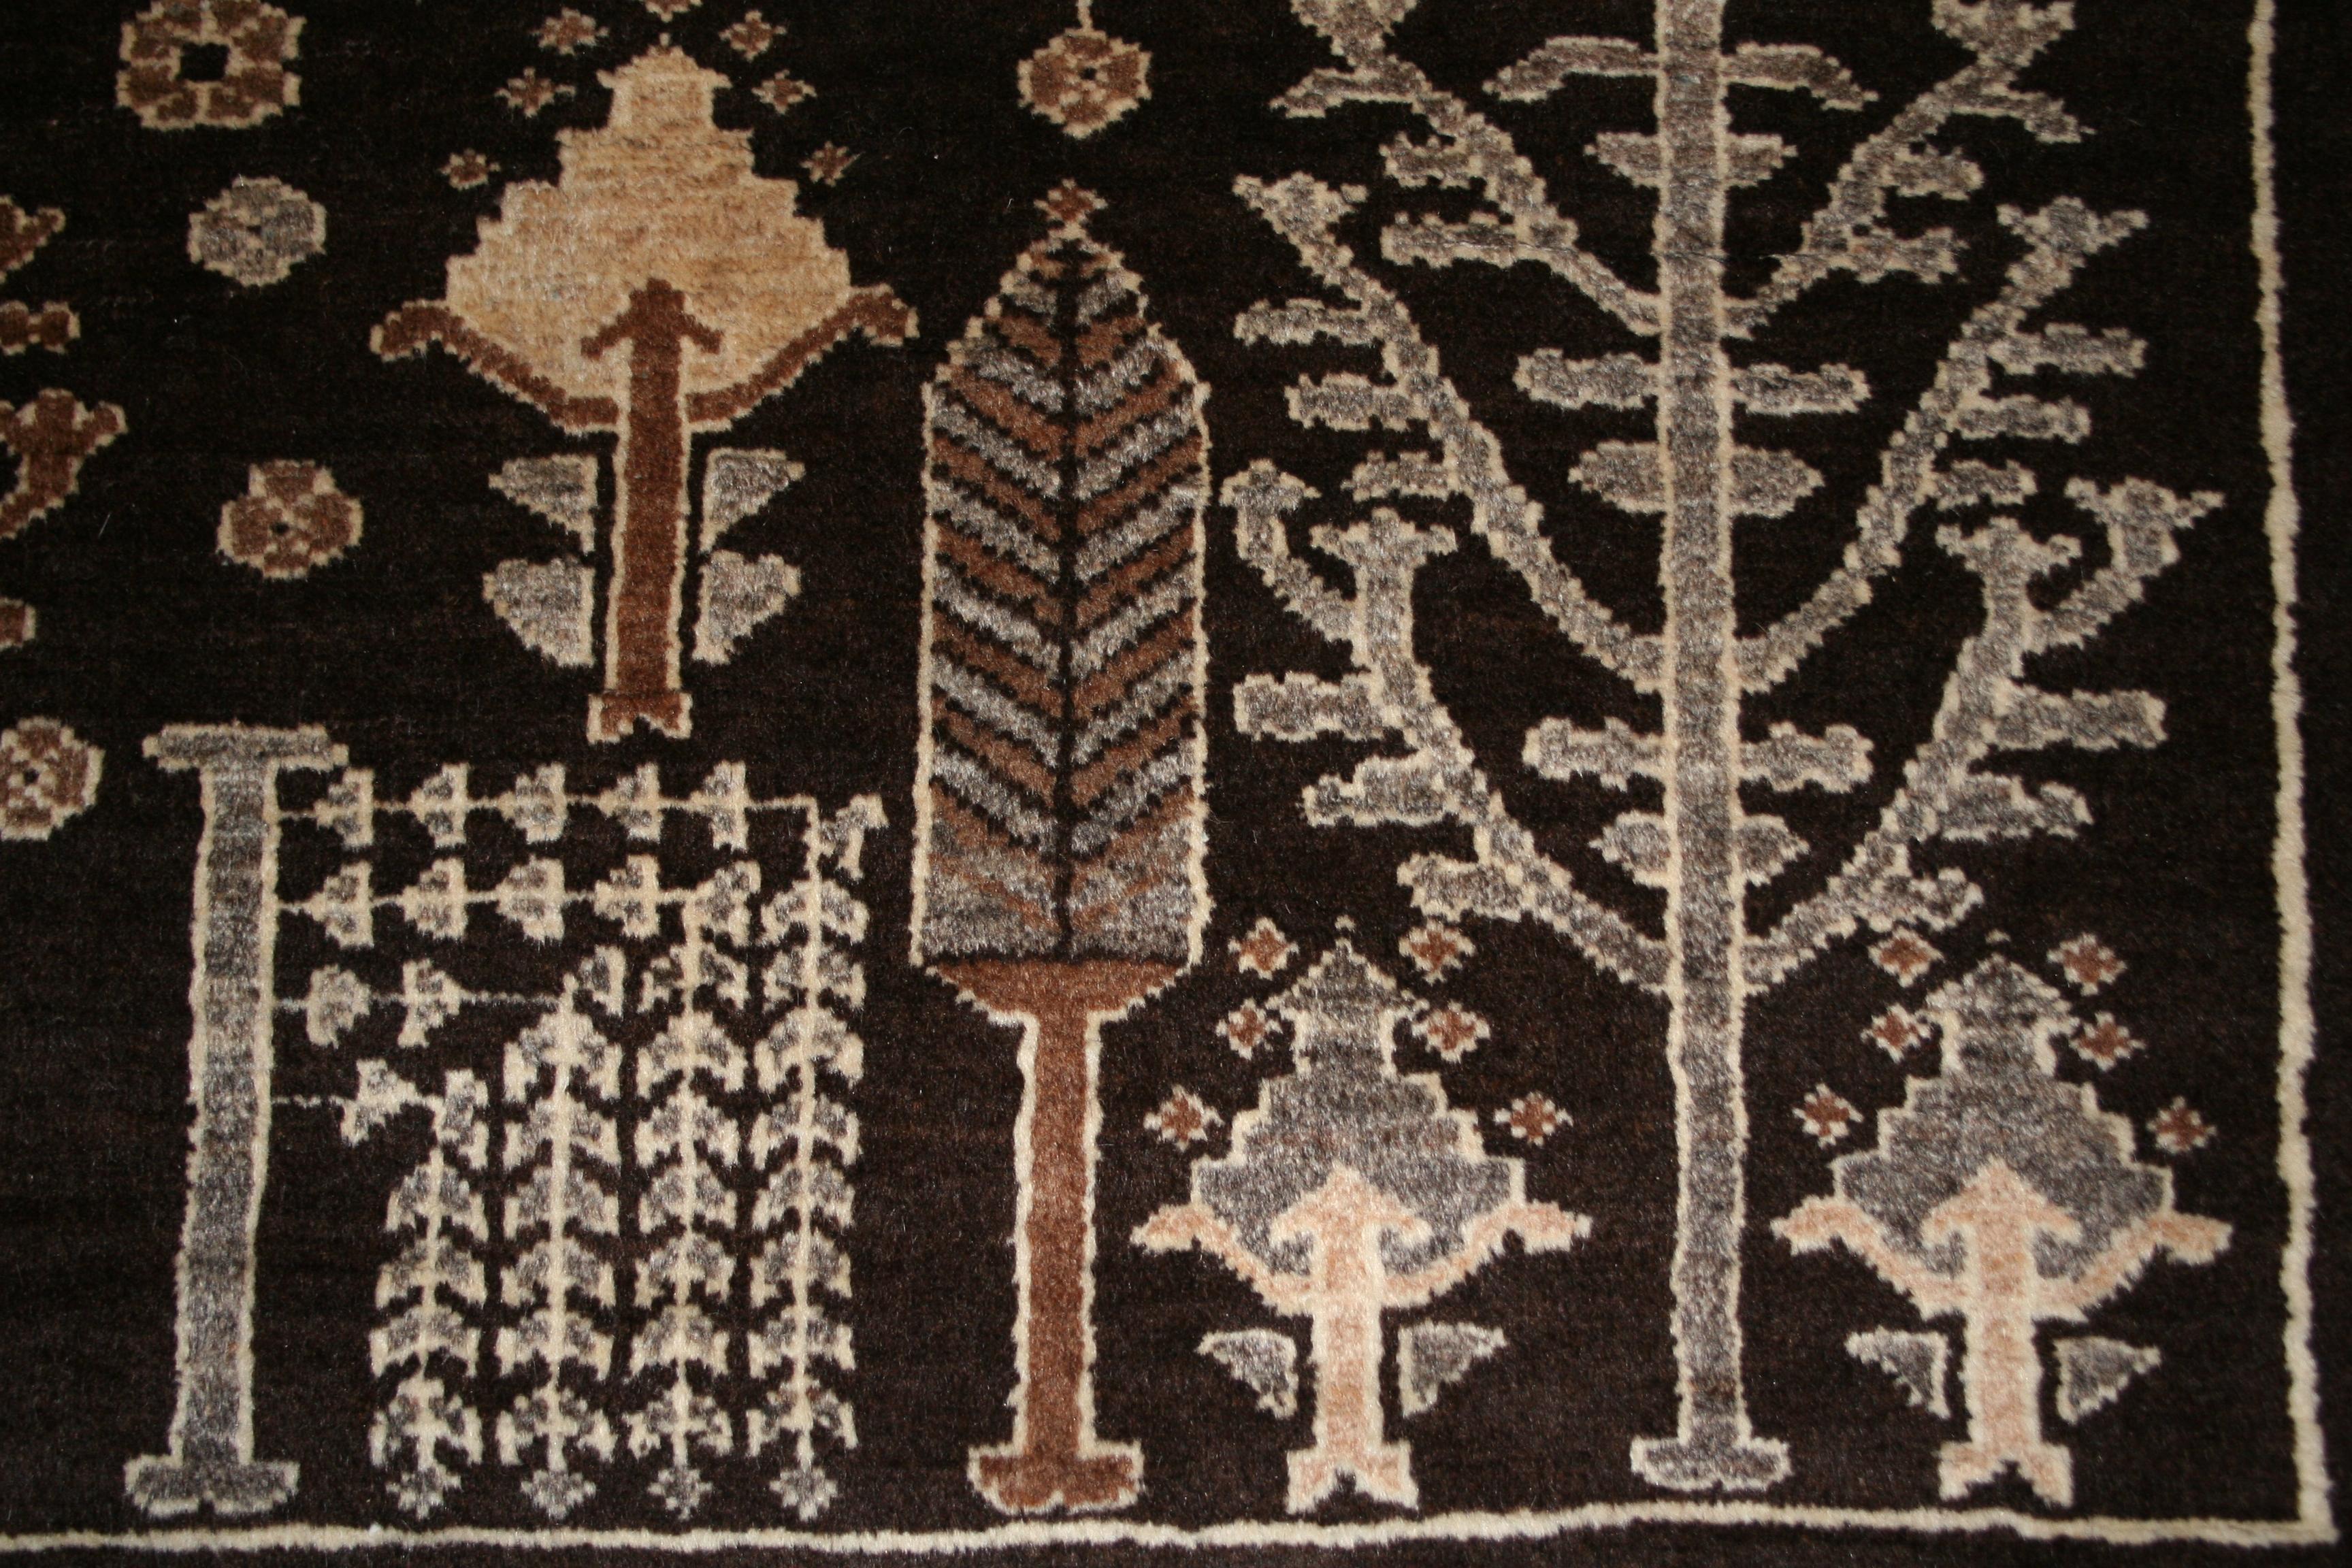 Eine zurückhaltende Palette von Mokka- und Elfenbeintönen unterscheidet dieses Stück von den meisten Bachtiari-Teppichen ähnlichen Jahrgangs. Diese ungewöhnliche Farbgebung verleiht dem traditionellen Persianat-Muster sofort einen Hauch von